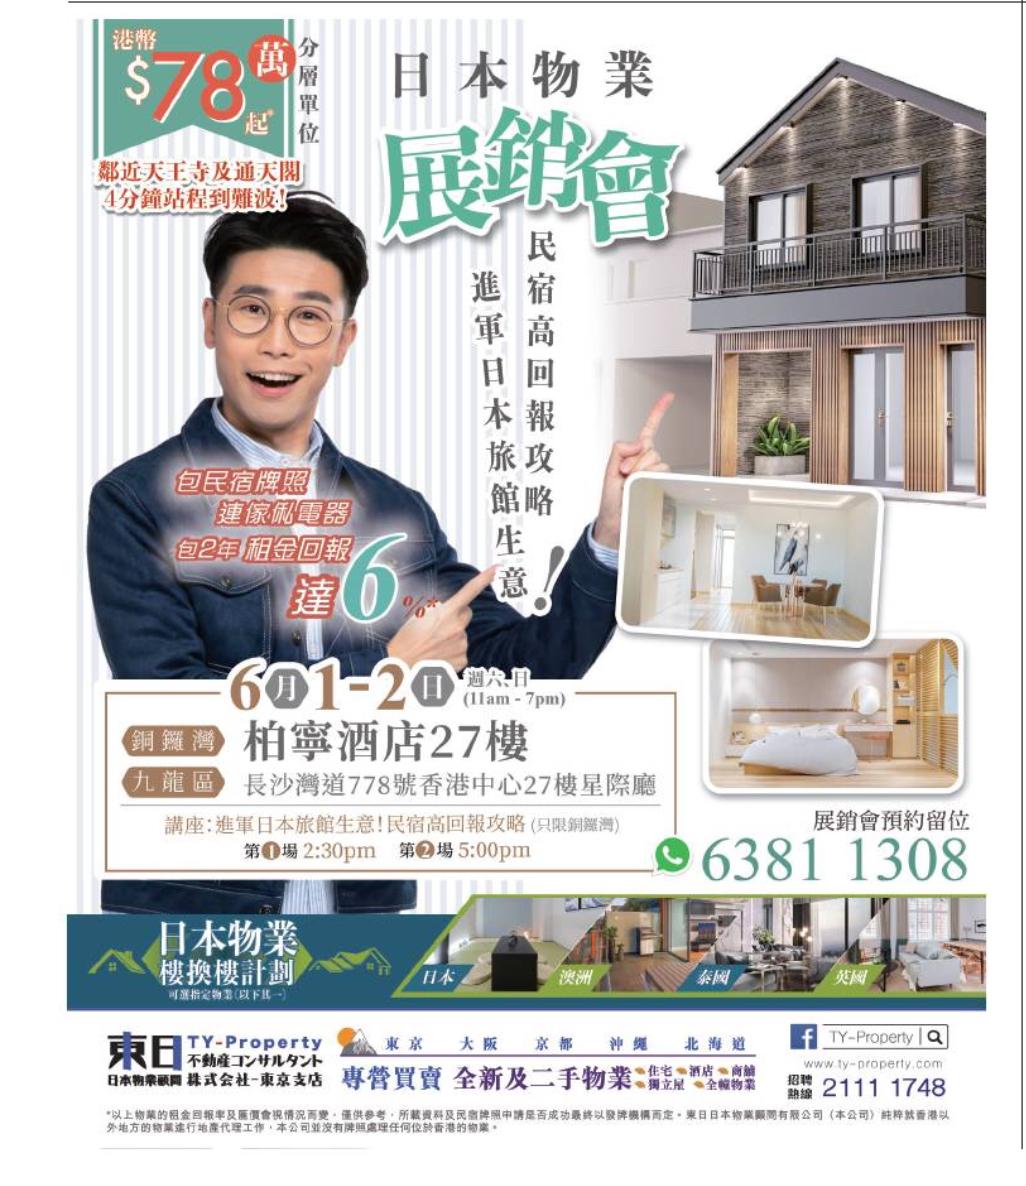 香港地产代理平台 Hong Kong Estate Property Agent 海外楼: 日本物業